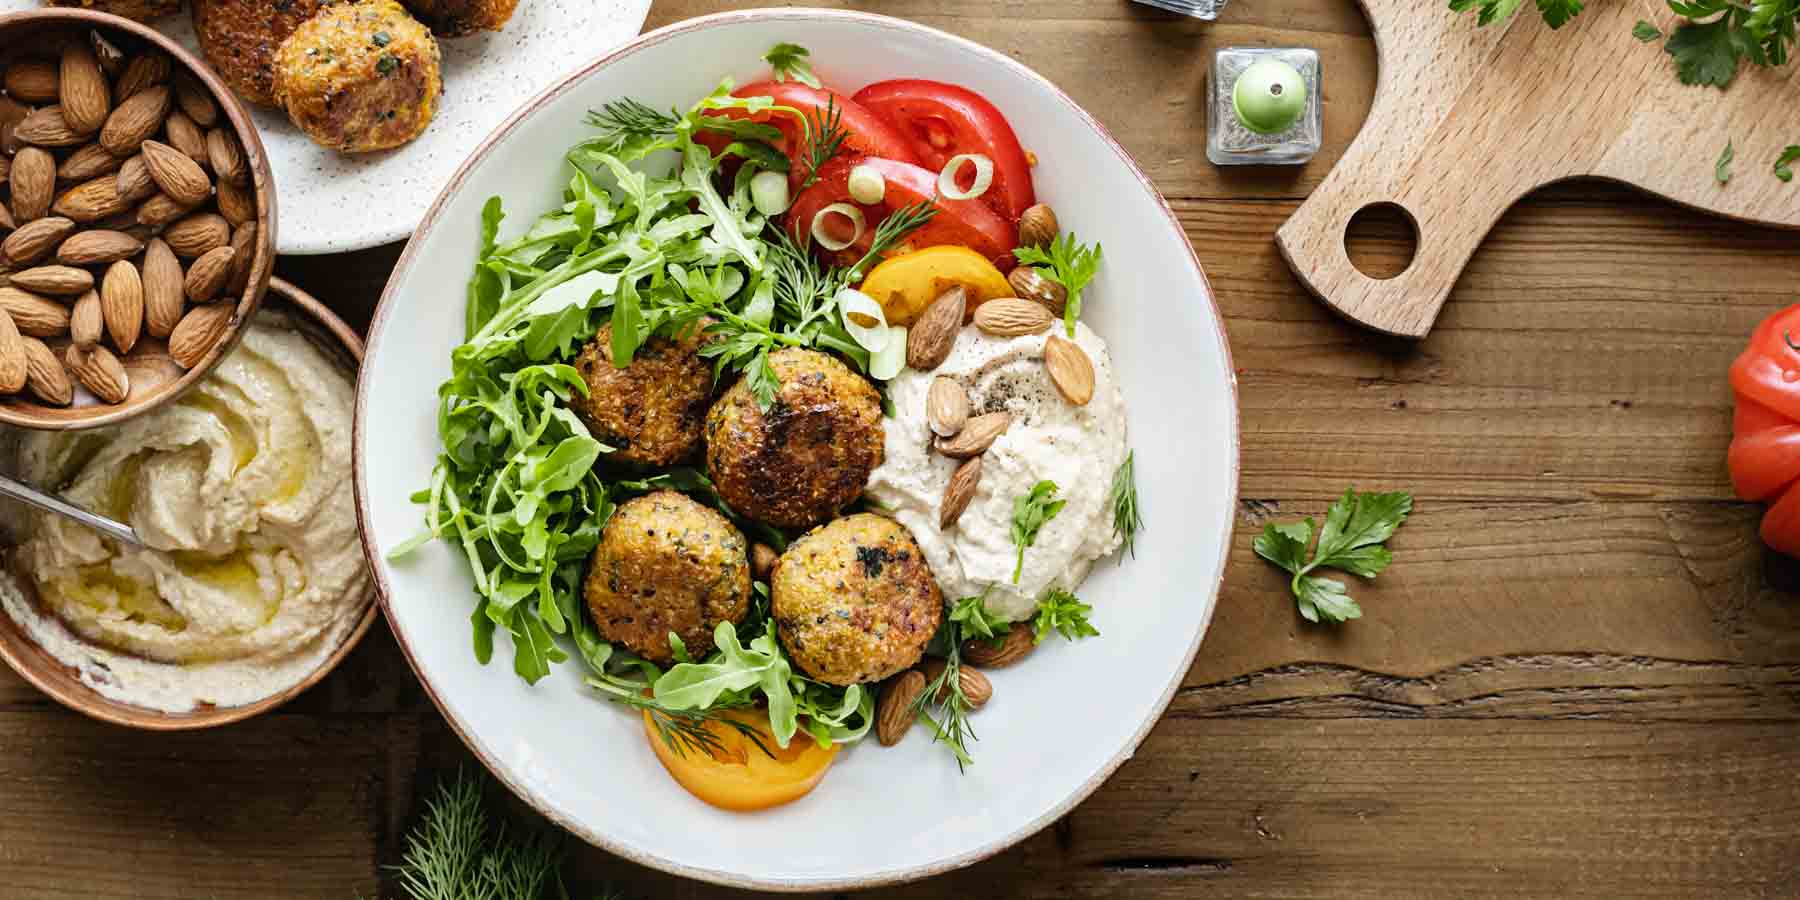 falafel i hummus - źródła białka w diecie wegańskiej